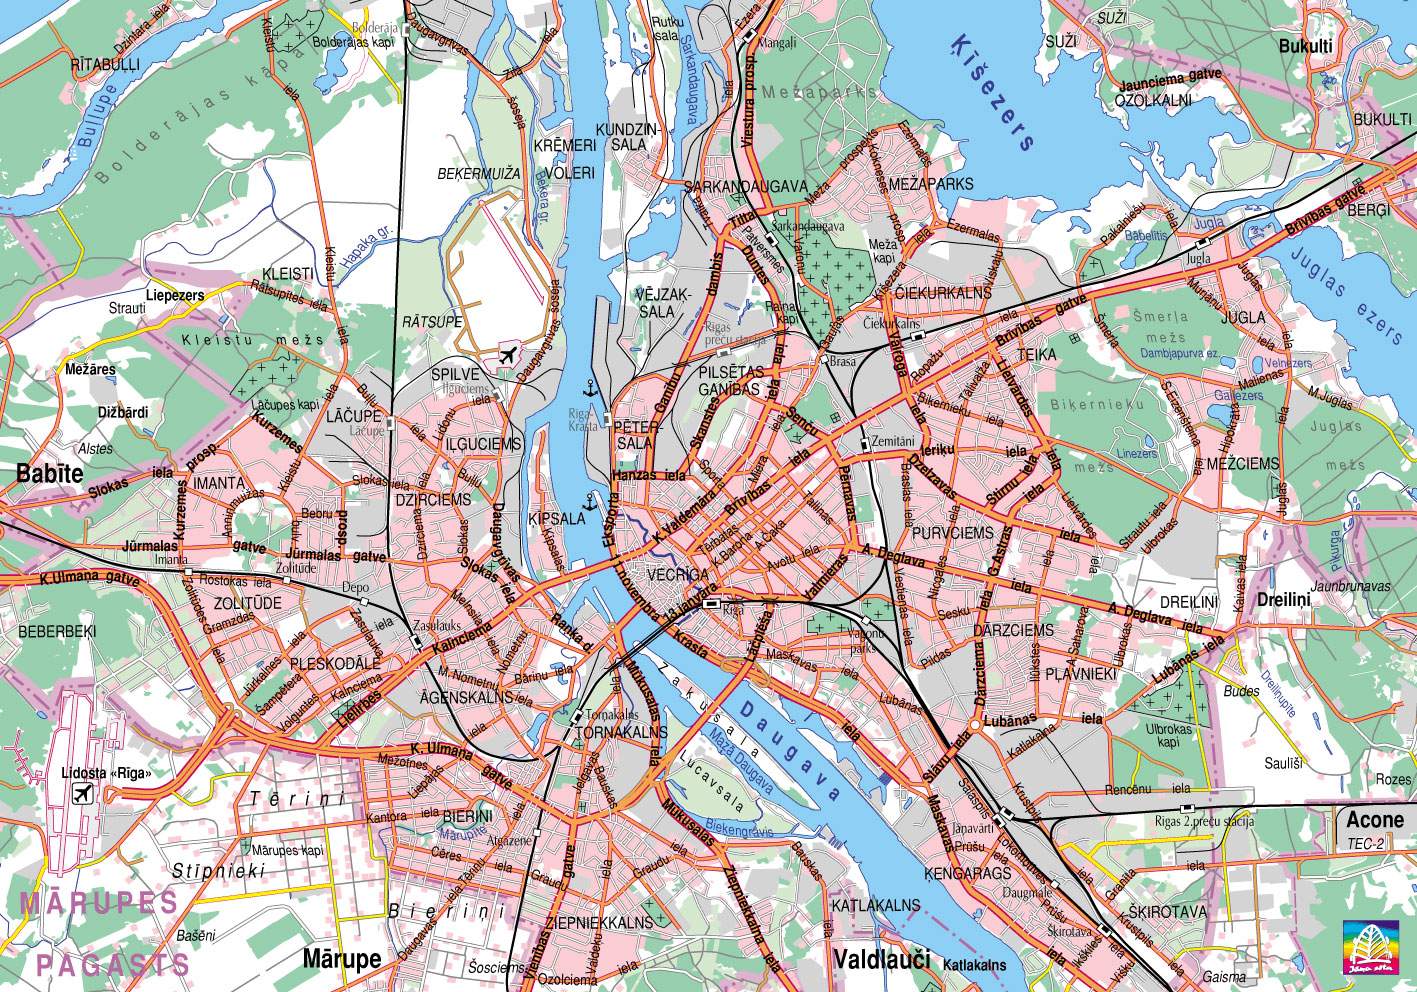 Stadtplan von Riga | Detaillierte gedruckte Karten von Riga, Lettland